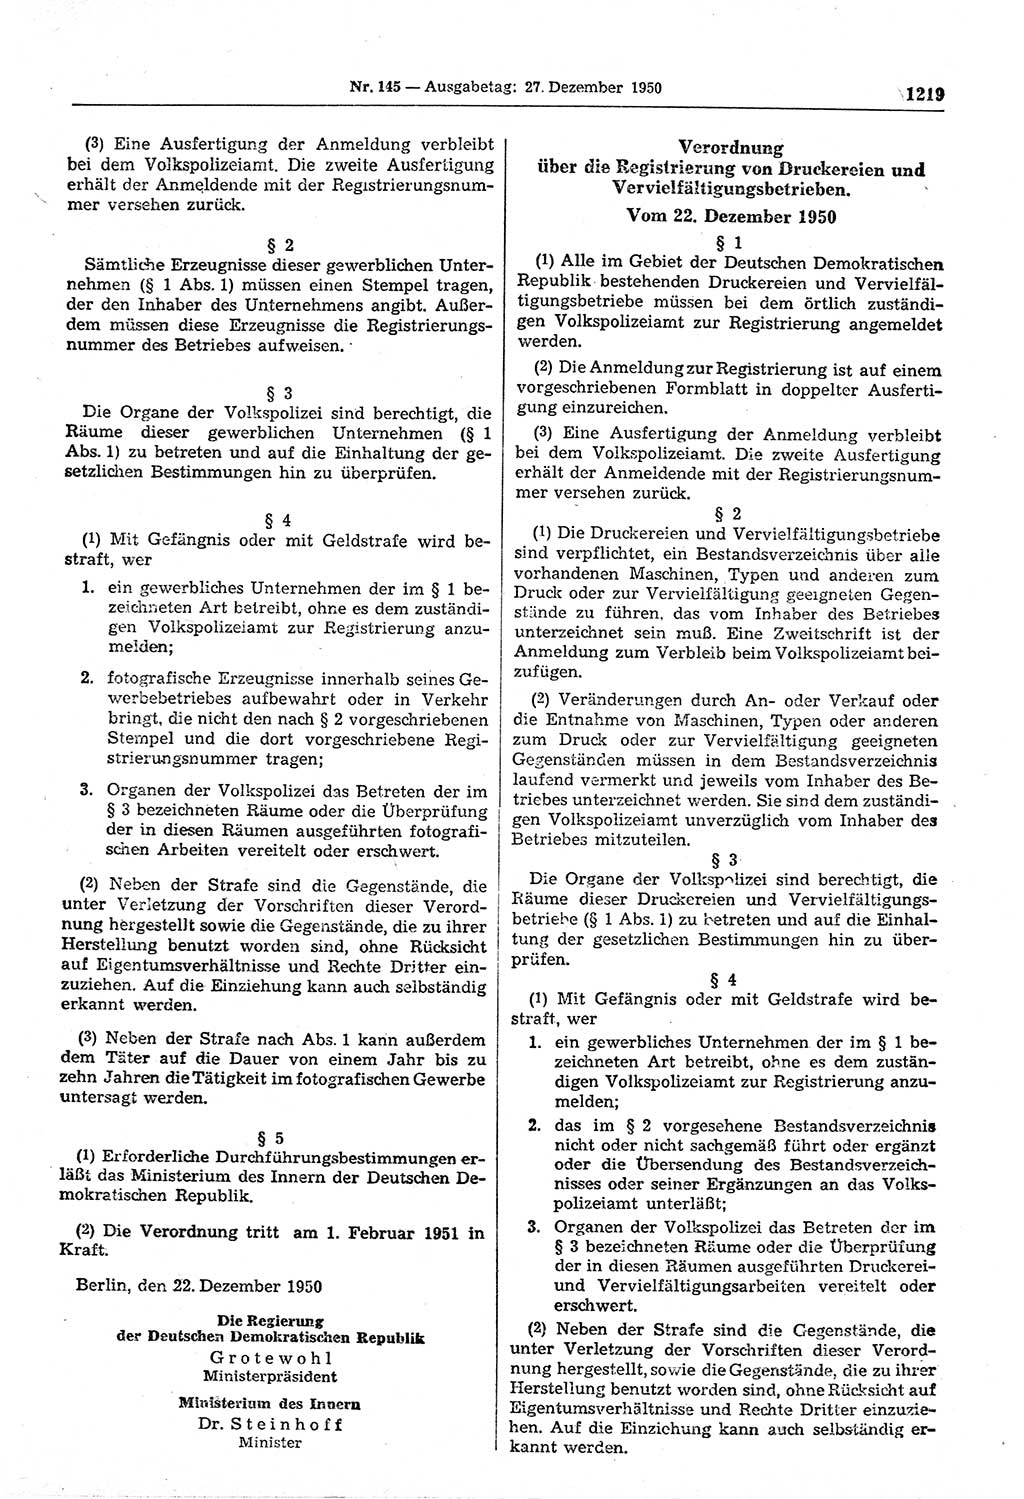 Gesetzblatt (GBl.) der Deutschen Demokratischen Republik (DDR) 1950, Seite 1219 (GBl. DDR 1950, S. 1219)